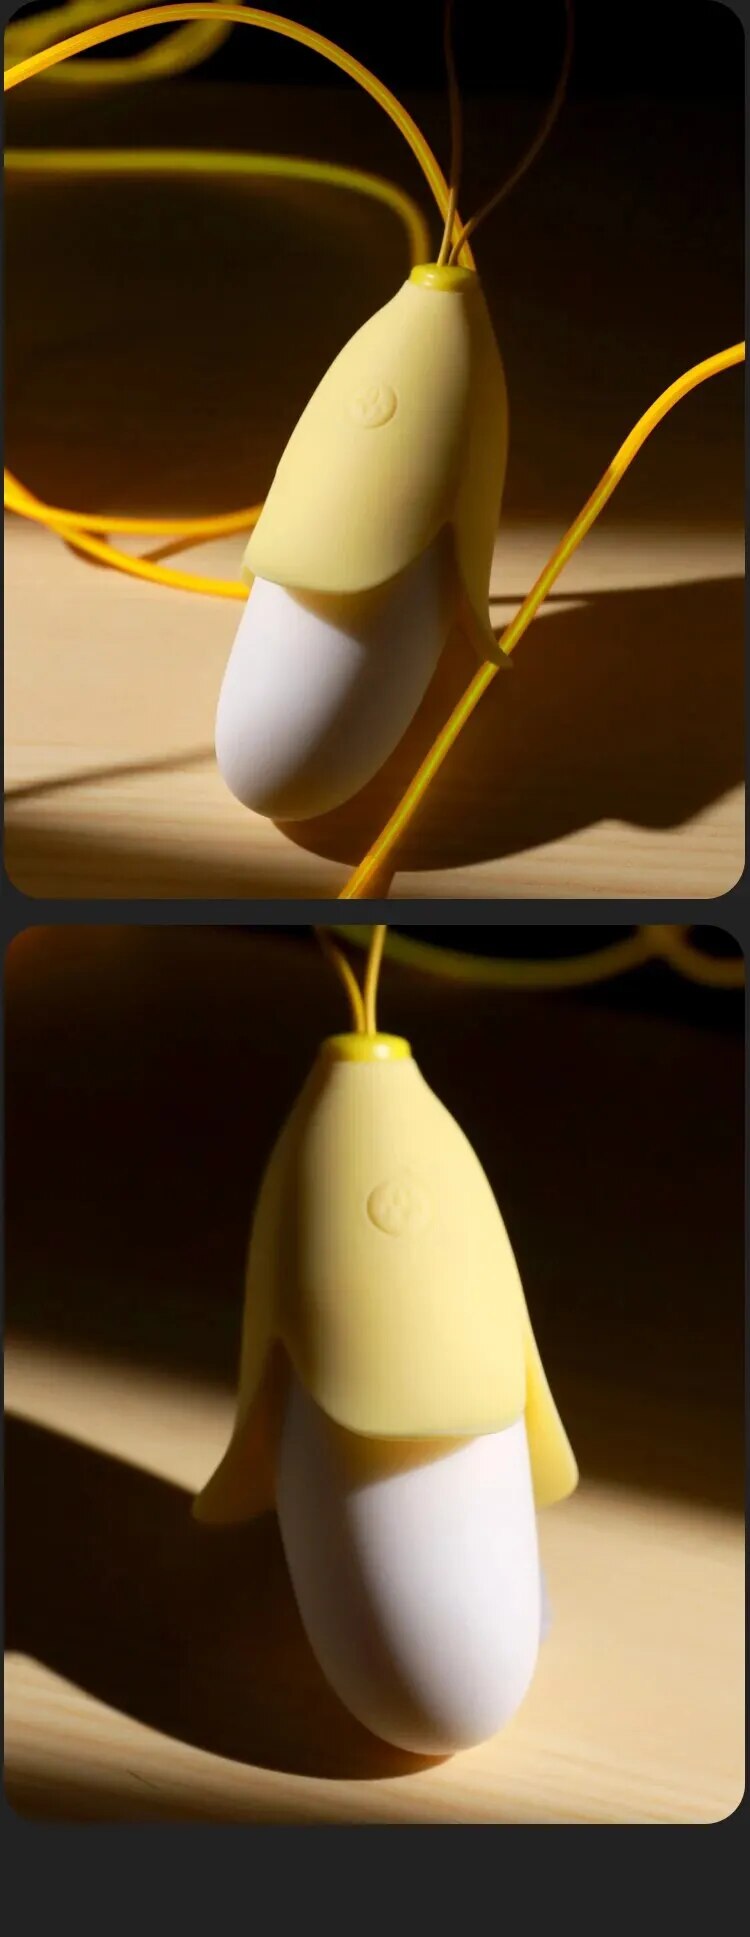 Cửa hàng bán Trứng rung mini nhỏ gọn hình quả chuối vàng silicon siêu mềm giá sỉ